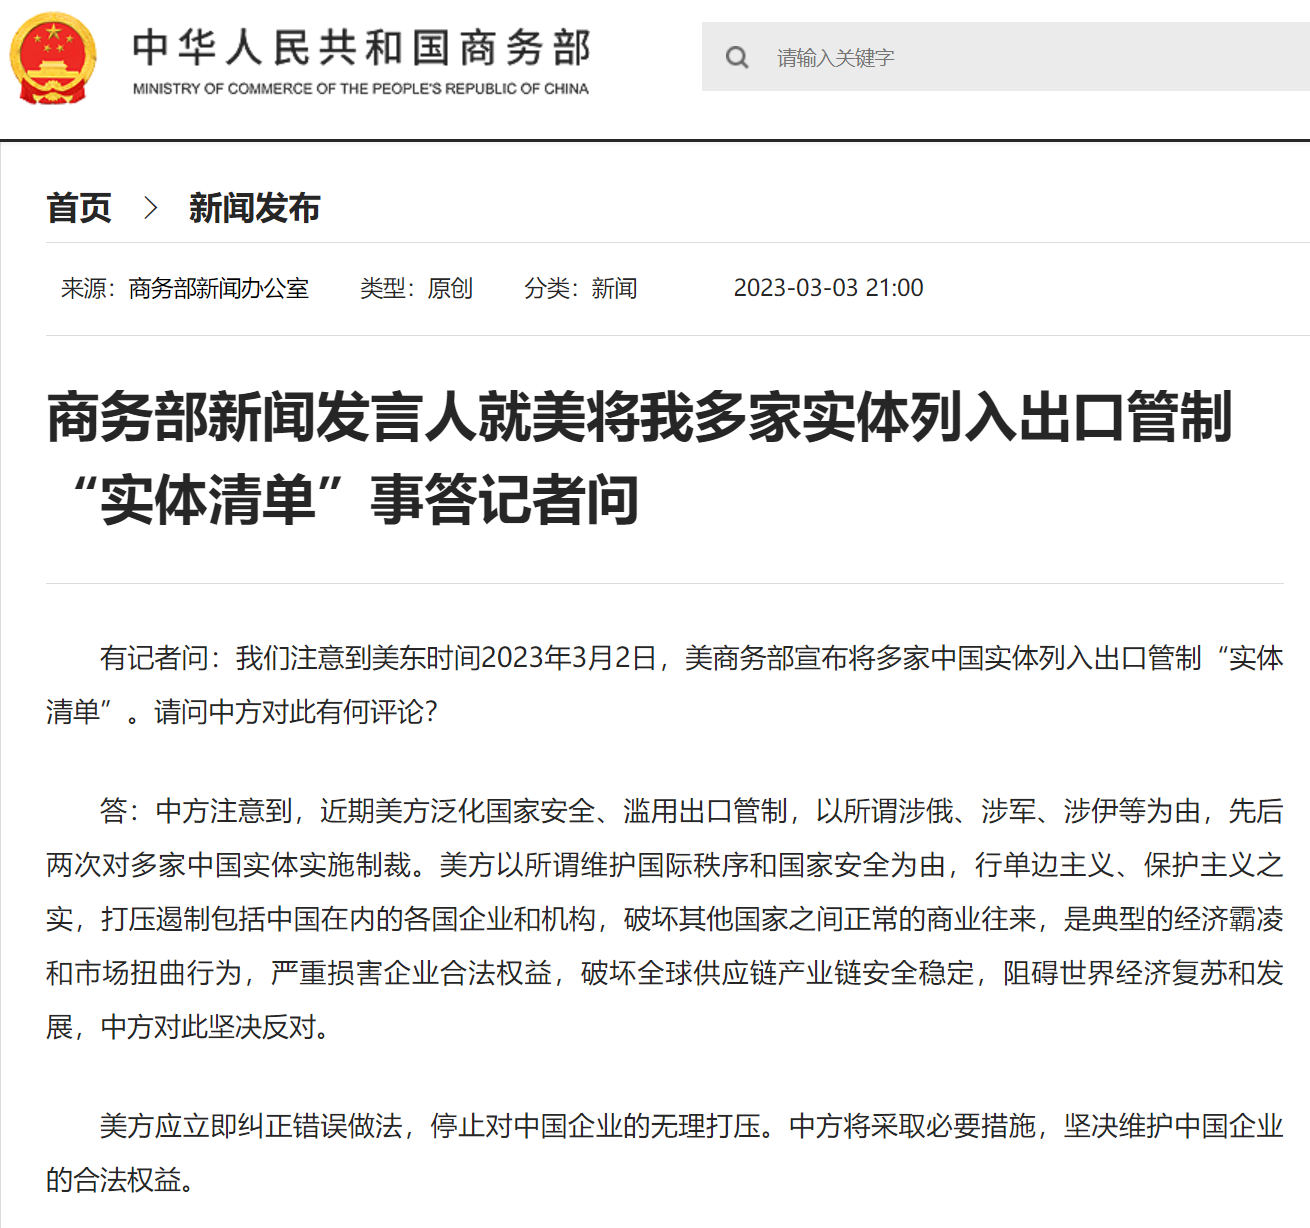 香港拟修订个资法 在地美企担忧中共实施网络限制 ＊ 阿波罗新闻网